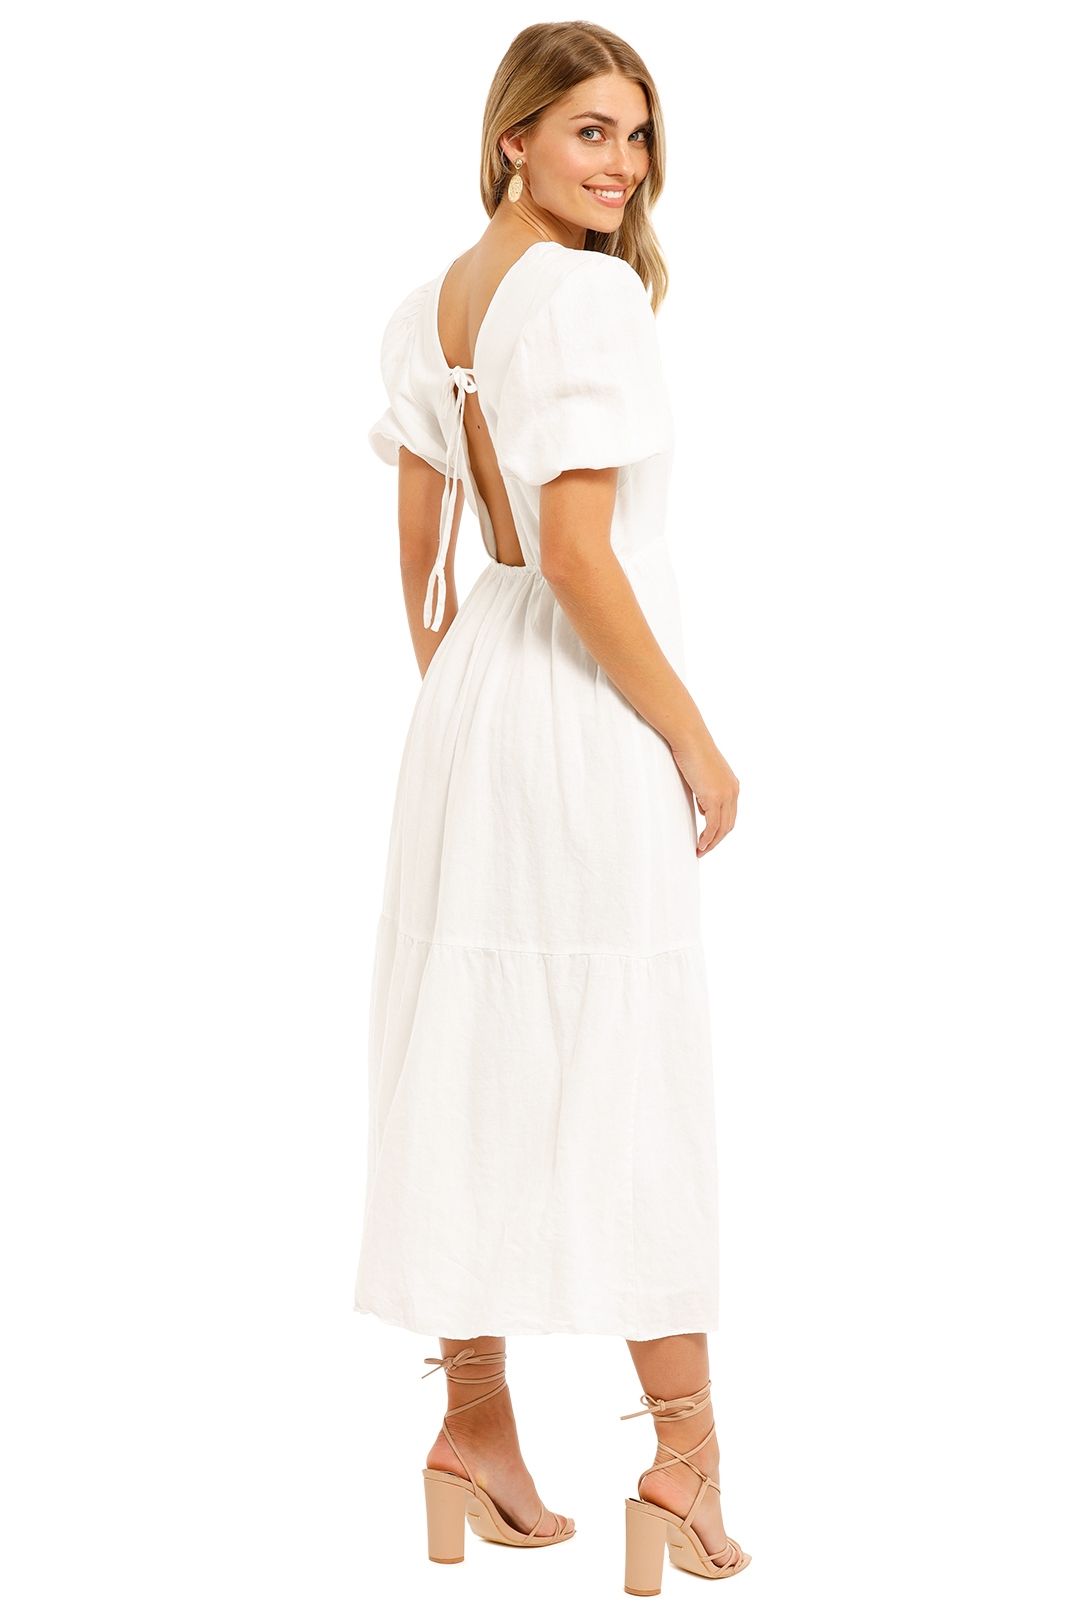 Jillian Boustred Katie Dress White Short Sleeve